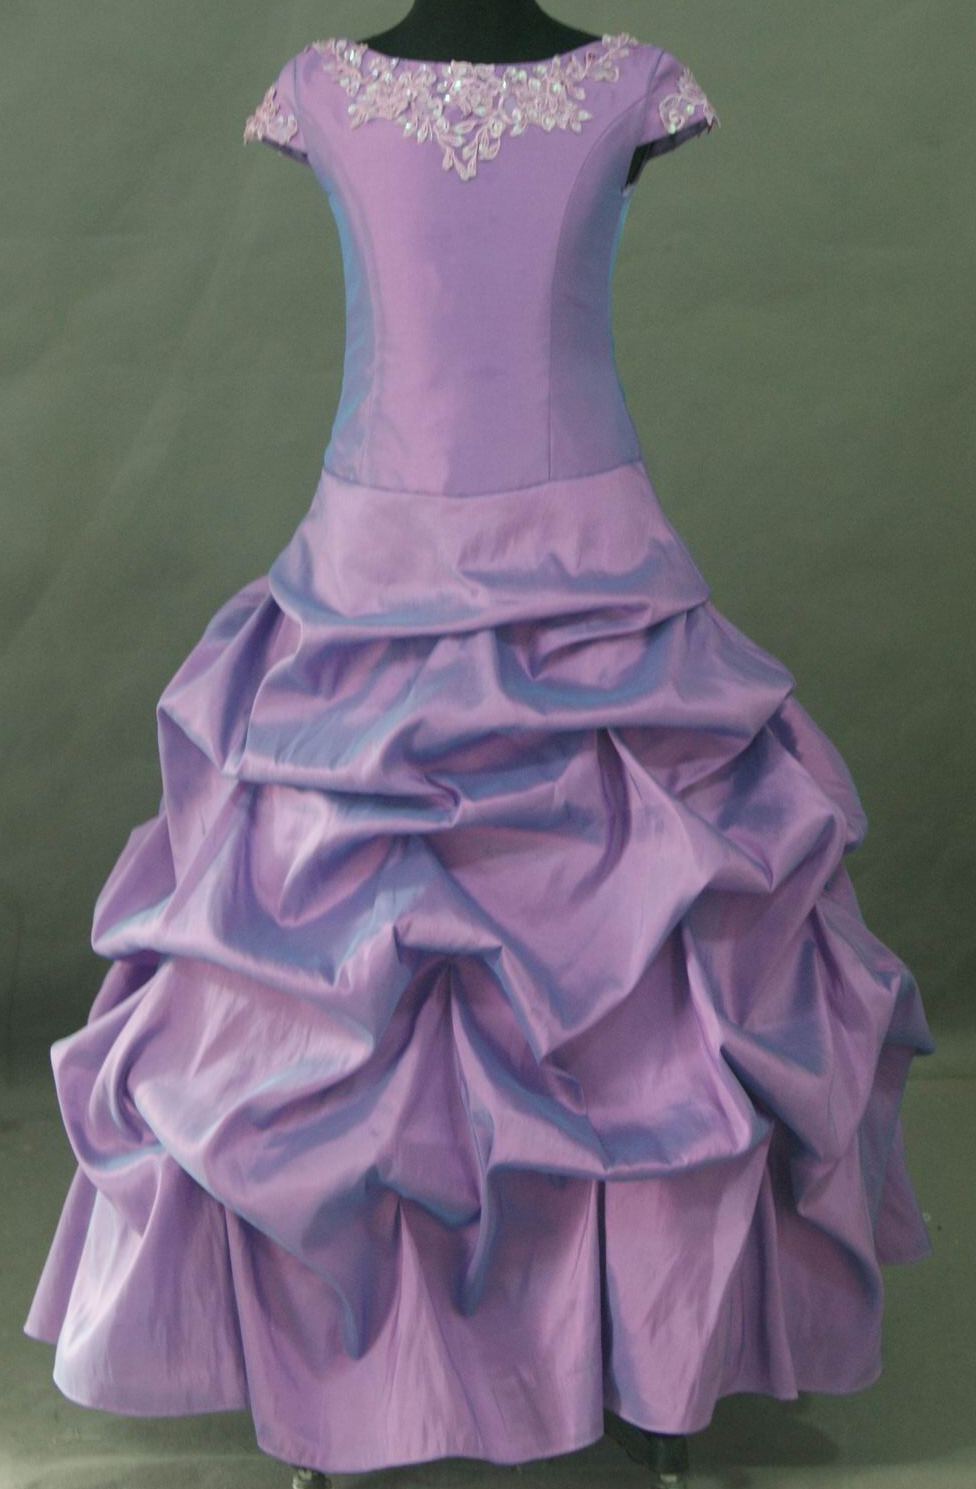 purple bridesmaid dresses kids